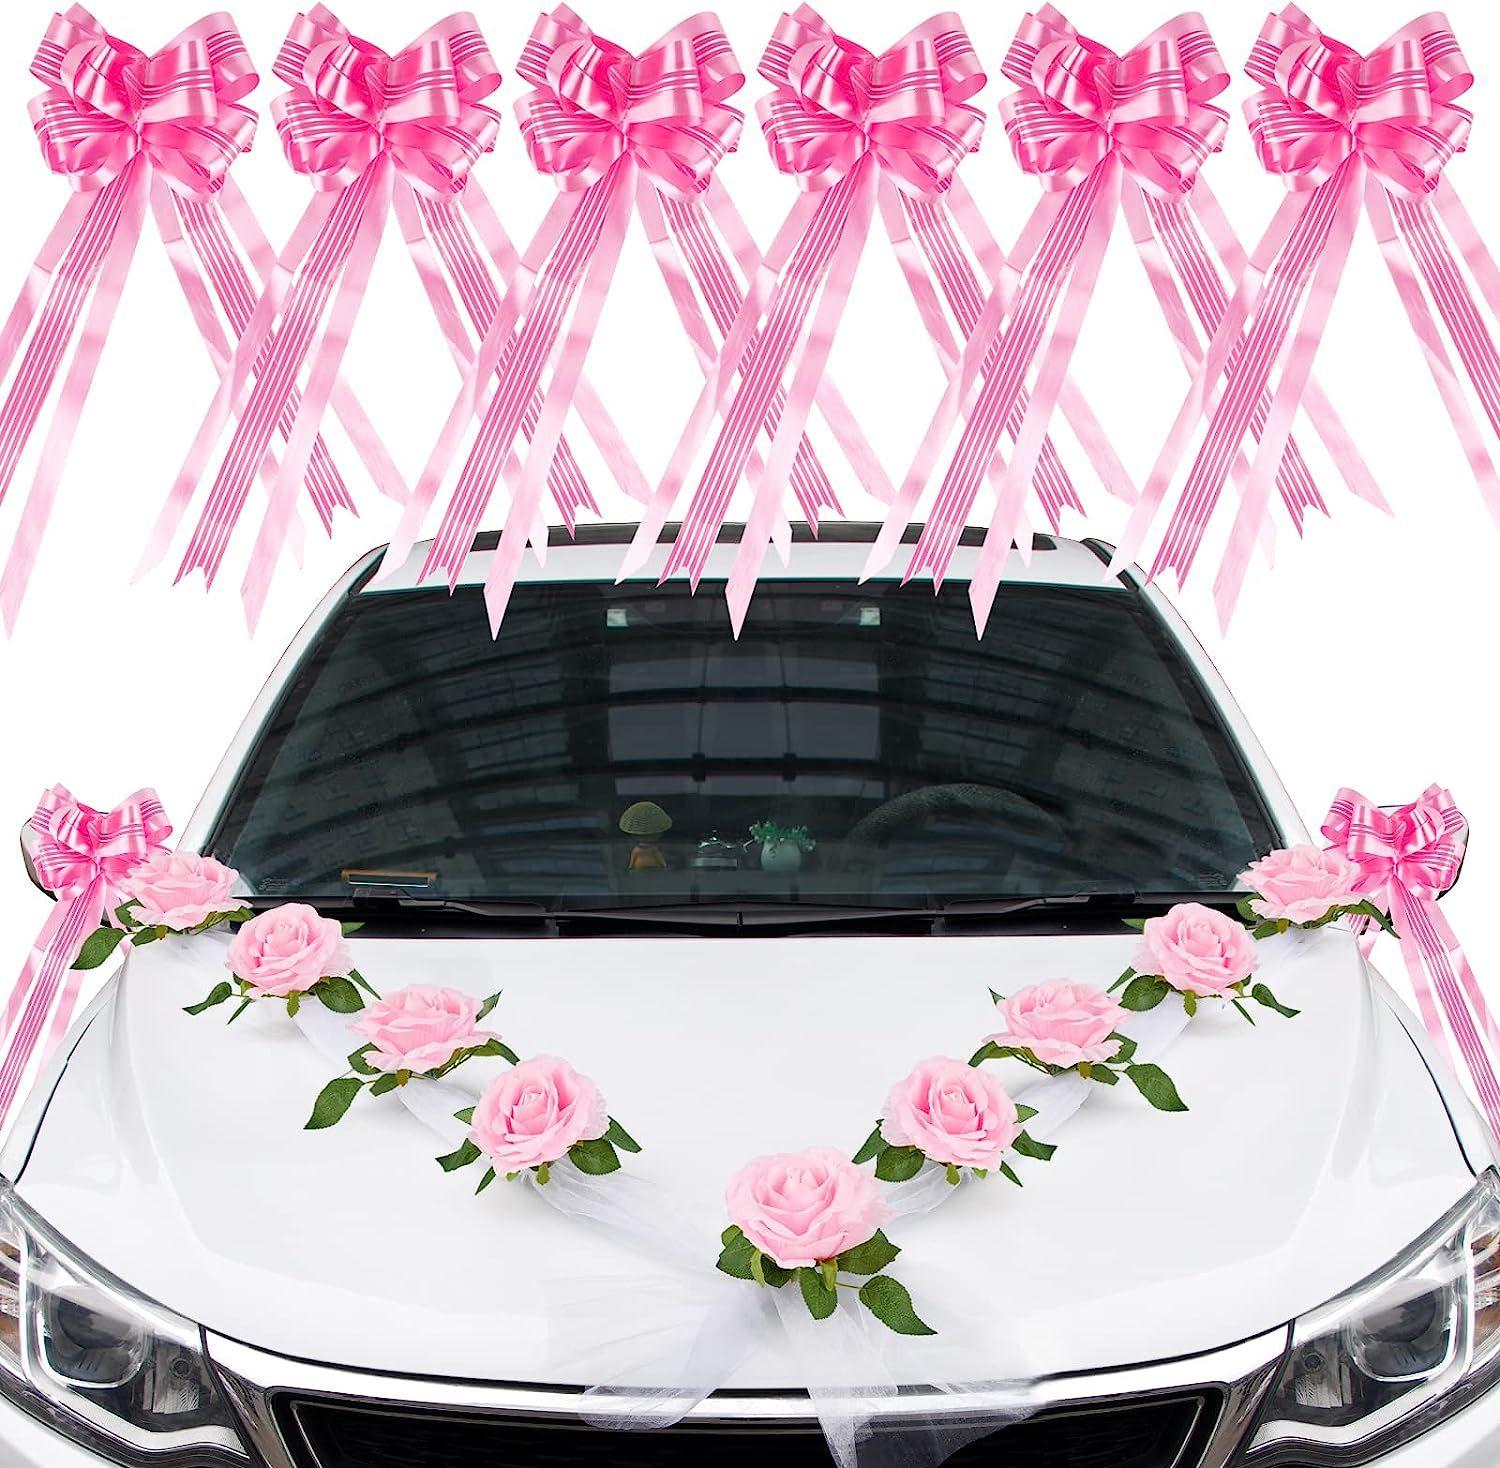 Kit pour décoration de voiture - Rose - Jour de Fête - Boutique Jour de fête